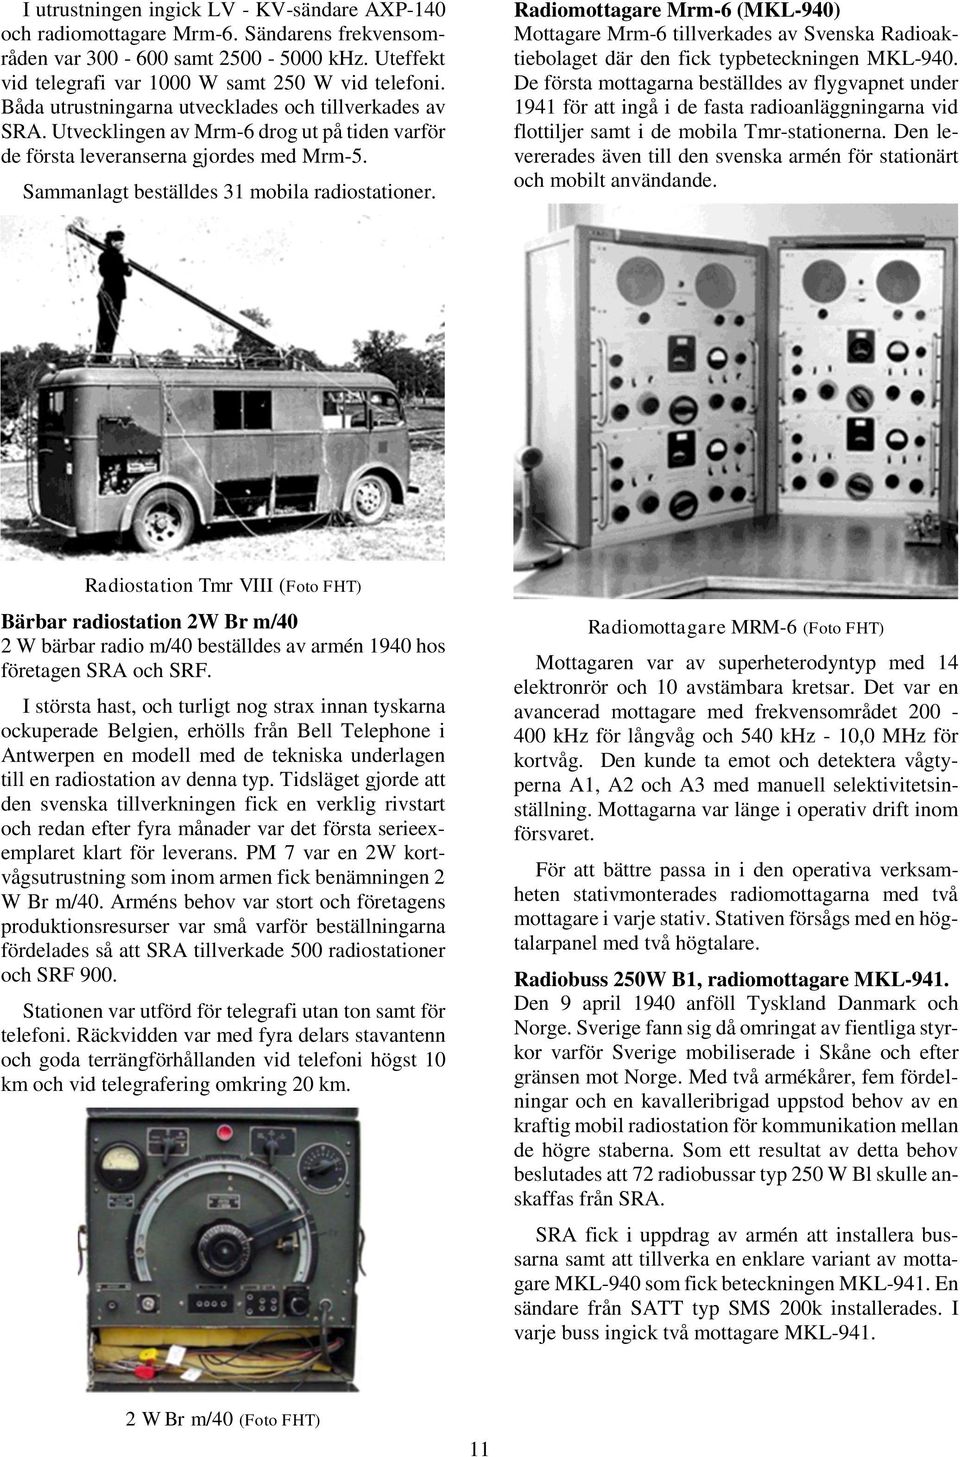 Radiomottagare Mrm-6 (MKL-940) Mottagare Mrm-6 tillverkades av Svenska Radioaktiebolaget där den fick typbeteckningen MKL-940.